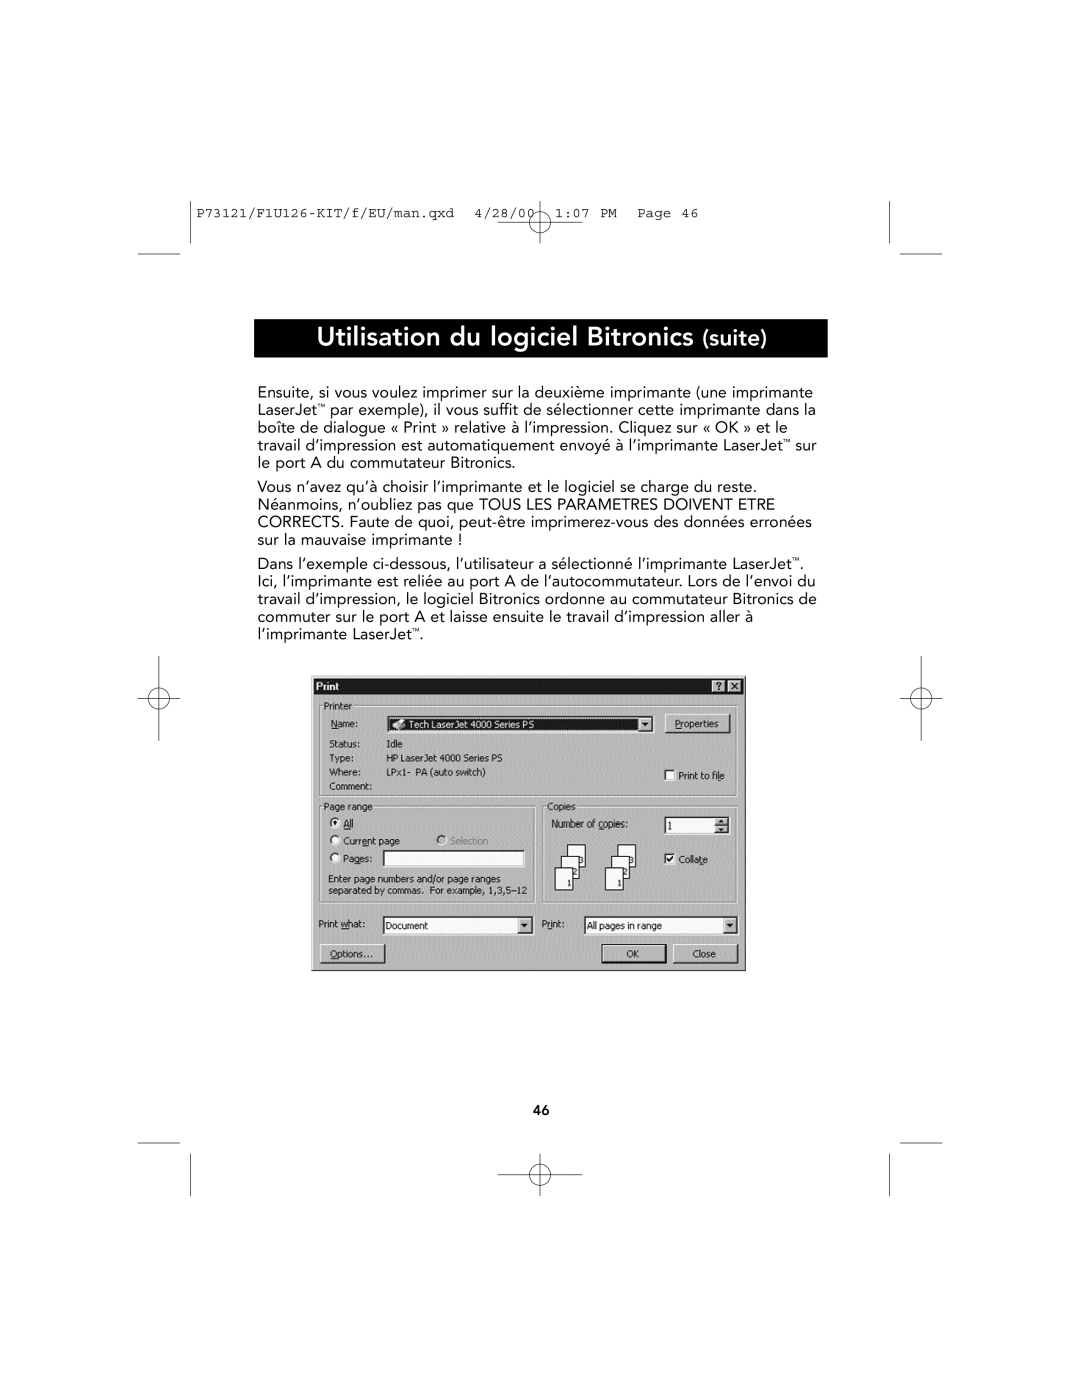 Belkin P73121, F1U126-KIT user manual Utilisation du logiciel Bitronics suite 